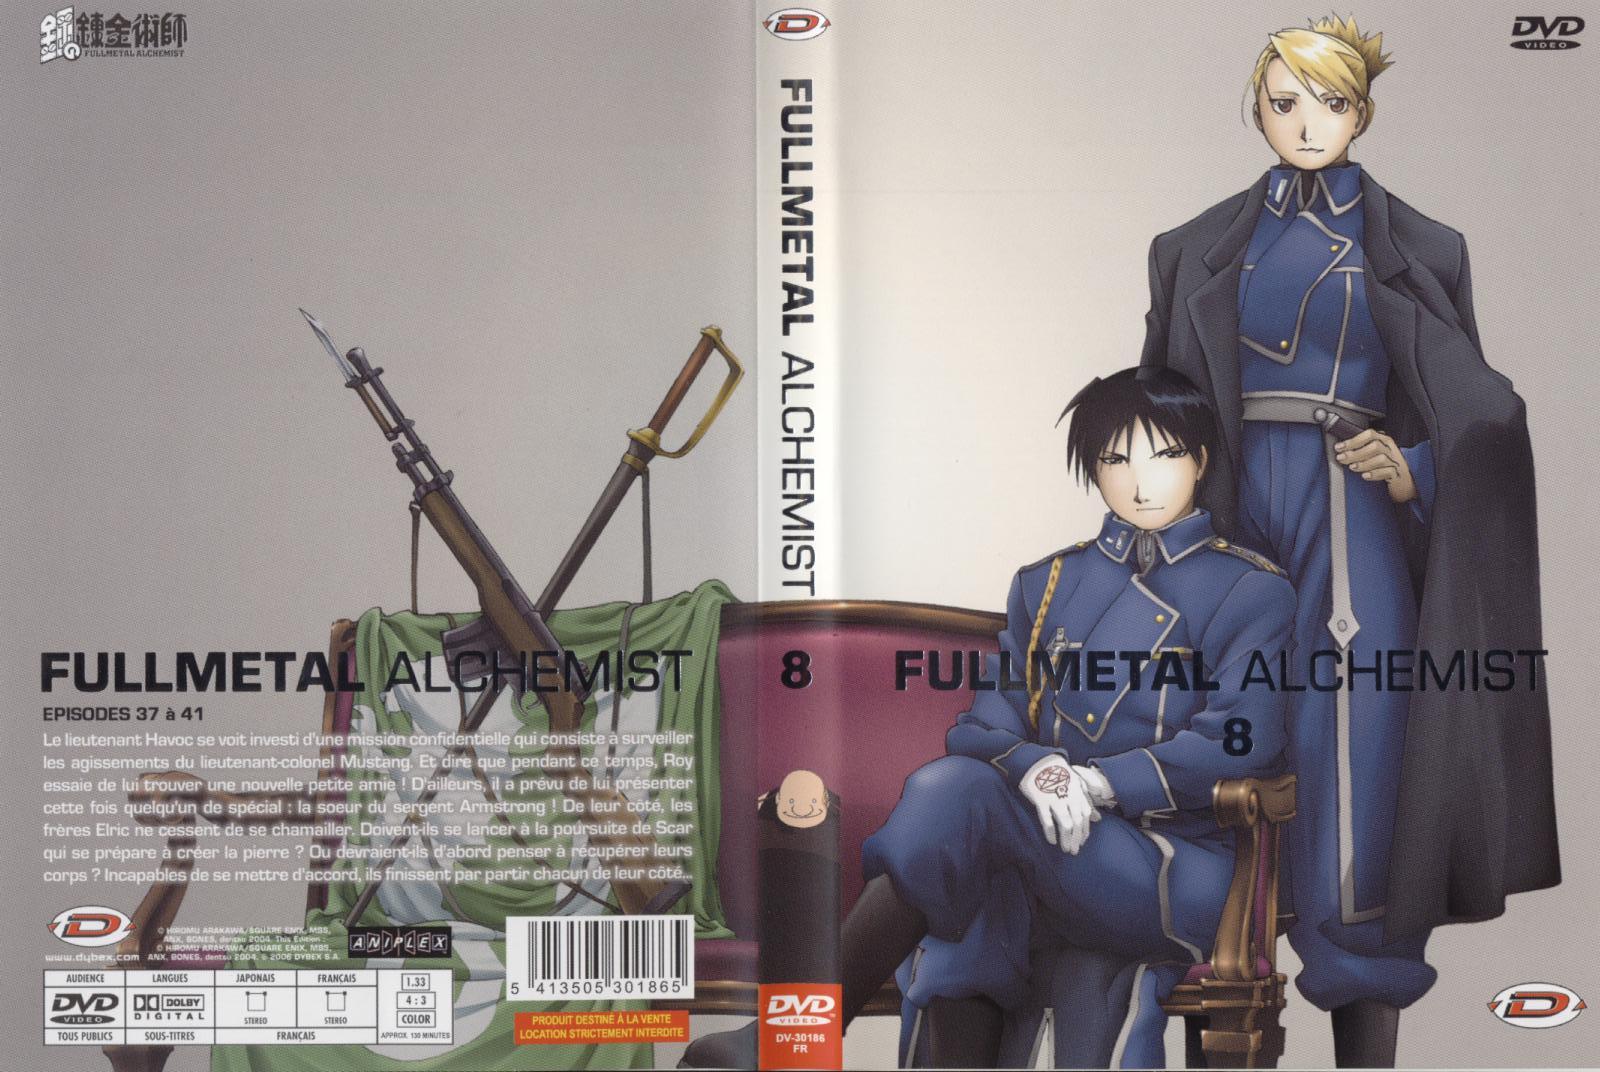 Jaquette DVD Fullmetal alchemist vol 8